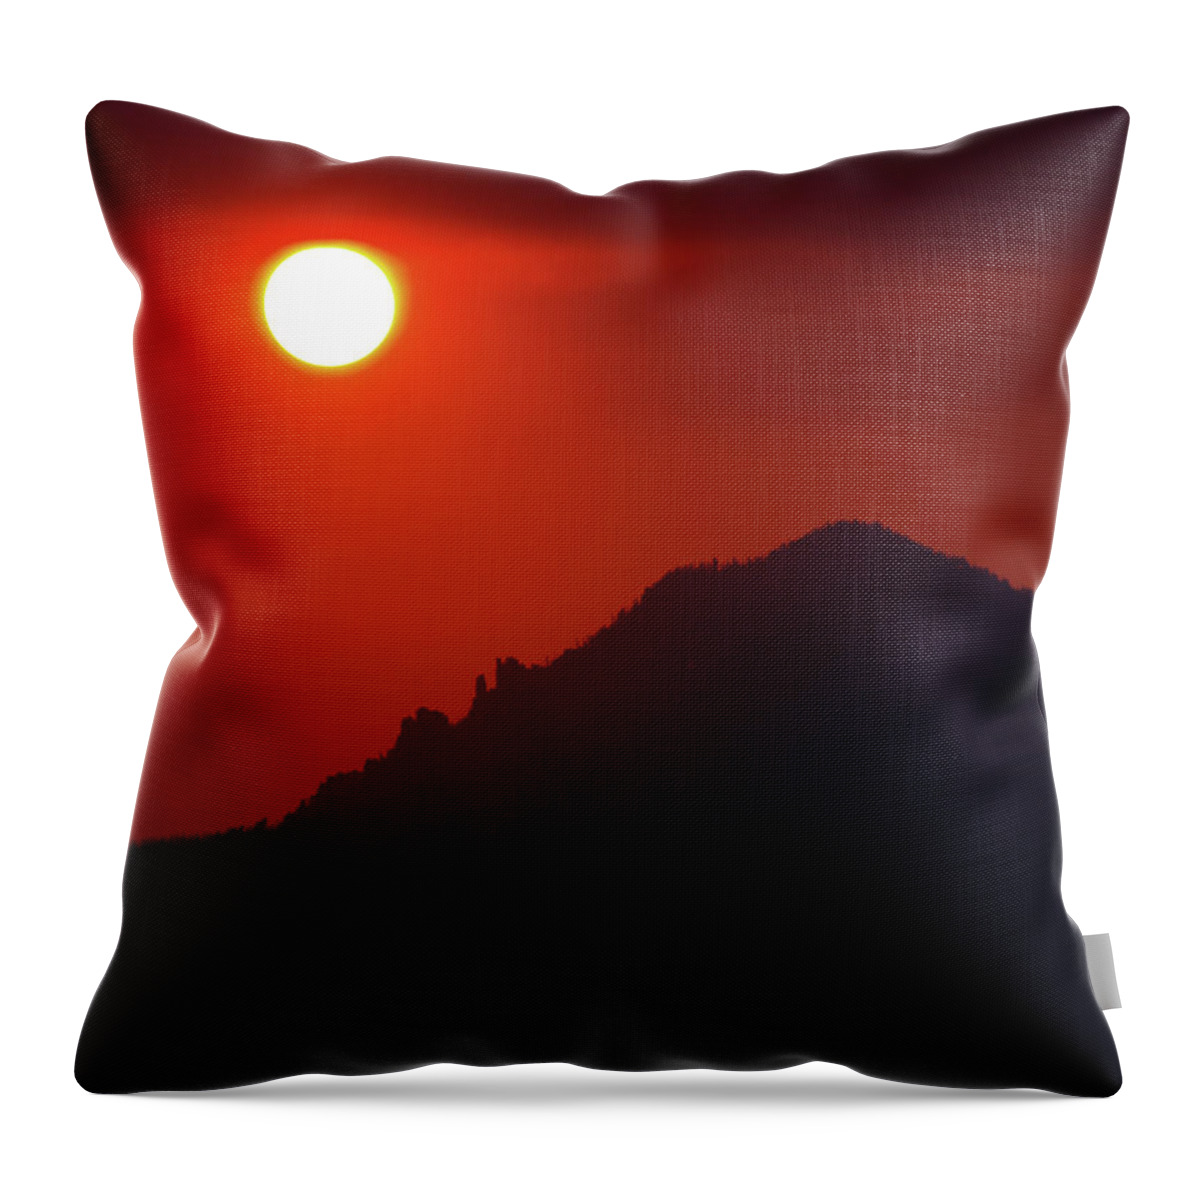 Montana Throw Pillow featuring the photograph Bitterroot Sunset 1 by Tara Krauss